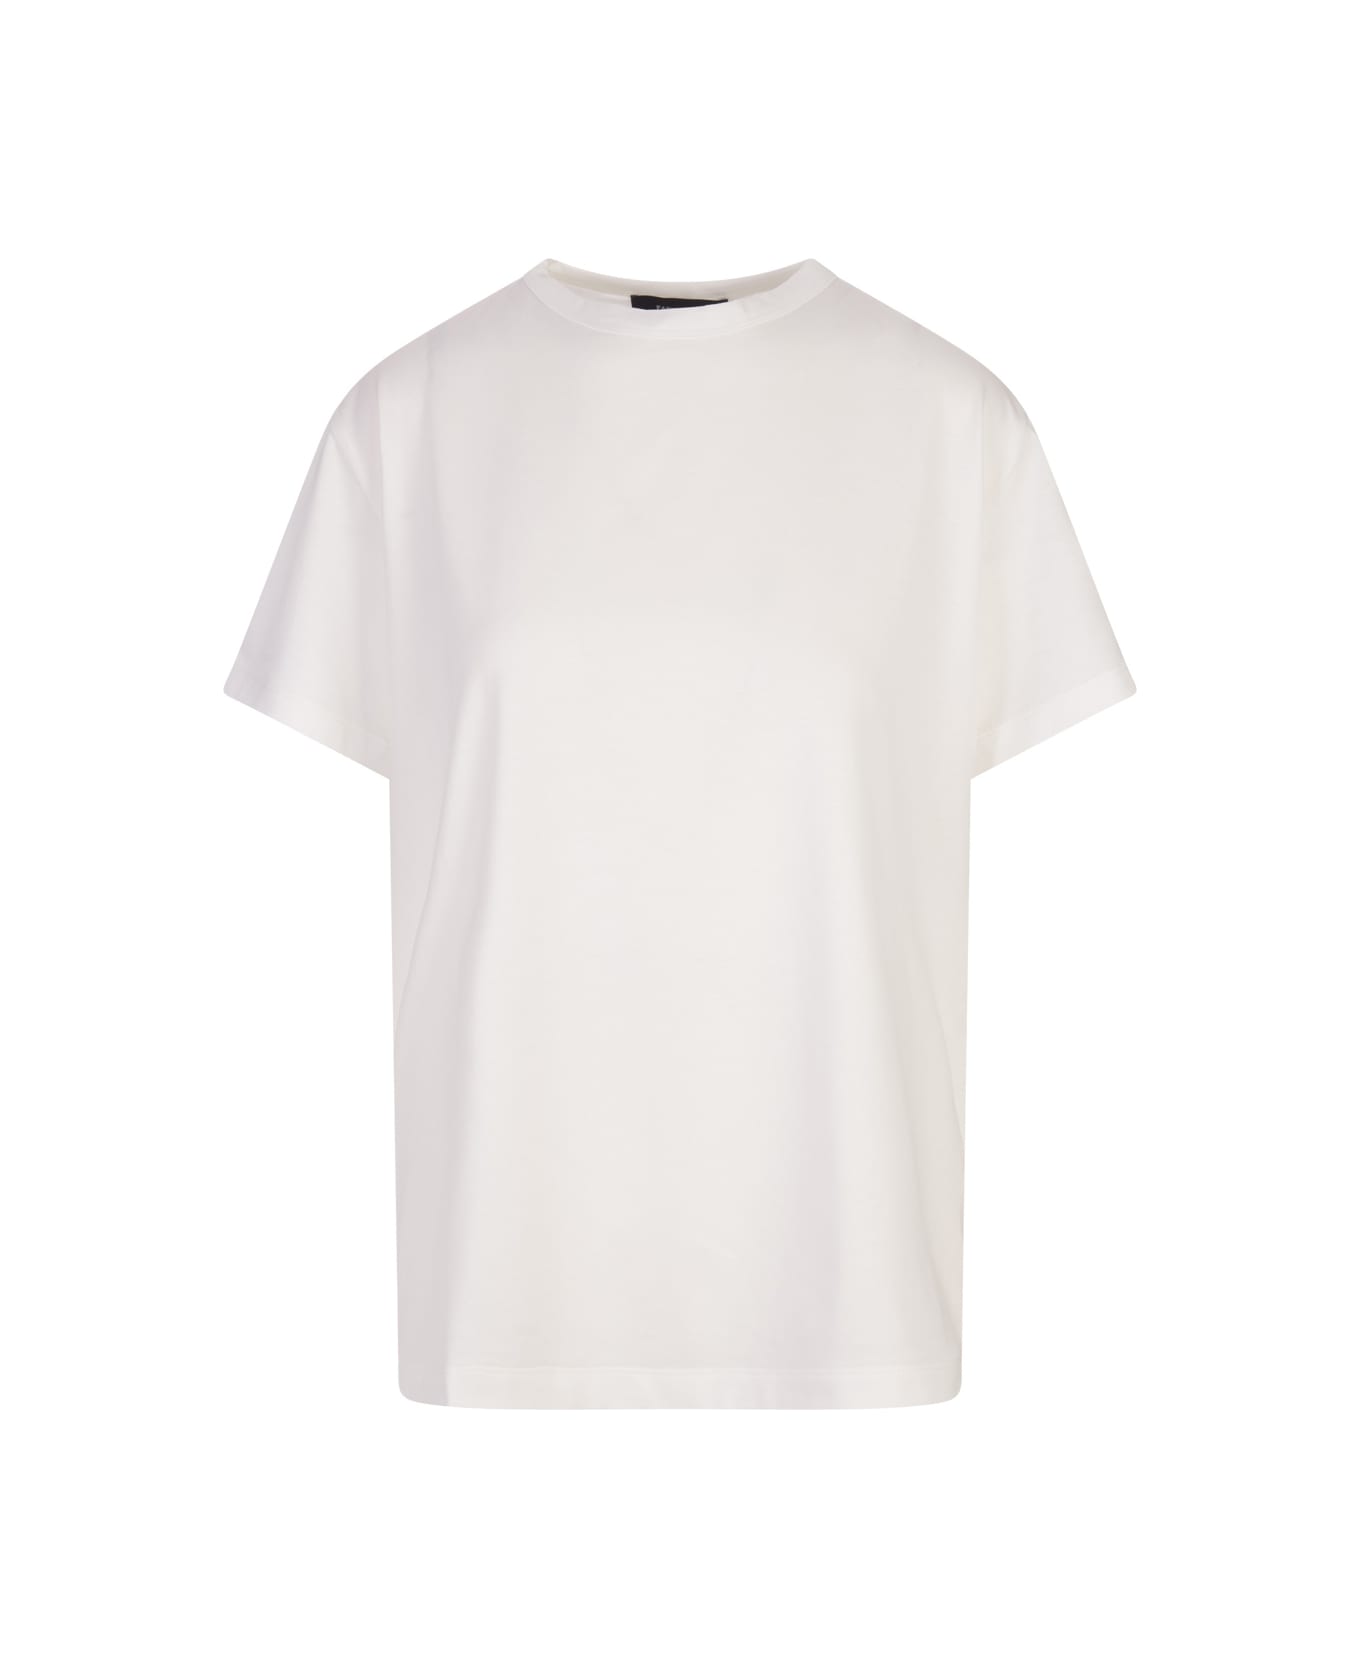 Fabiana Filippi White Cotton And Viscose T-shirt - White Tシャツ